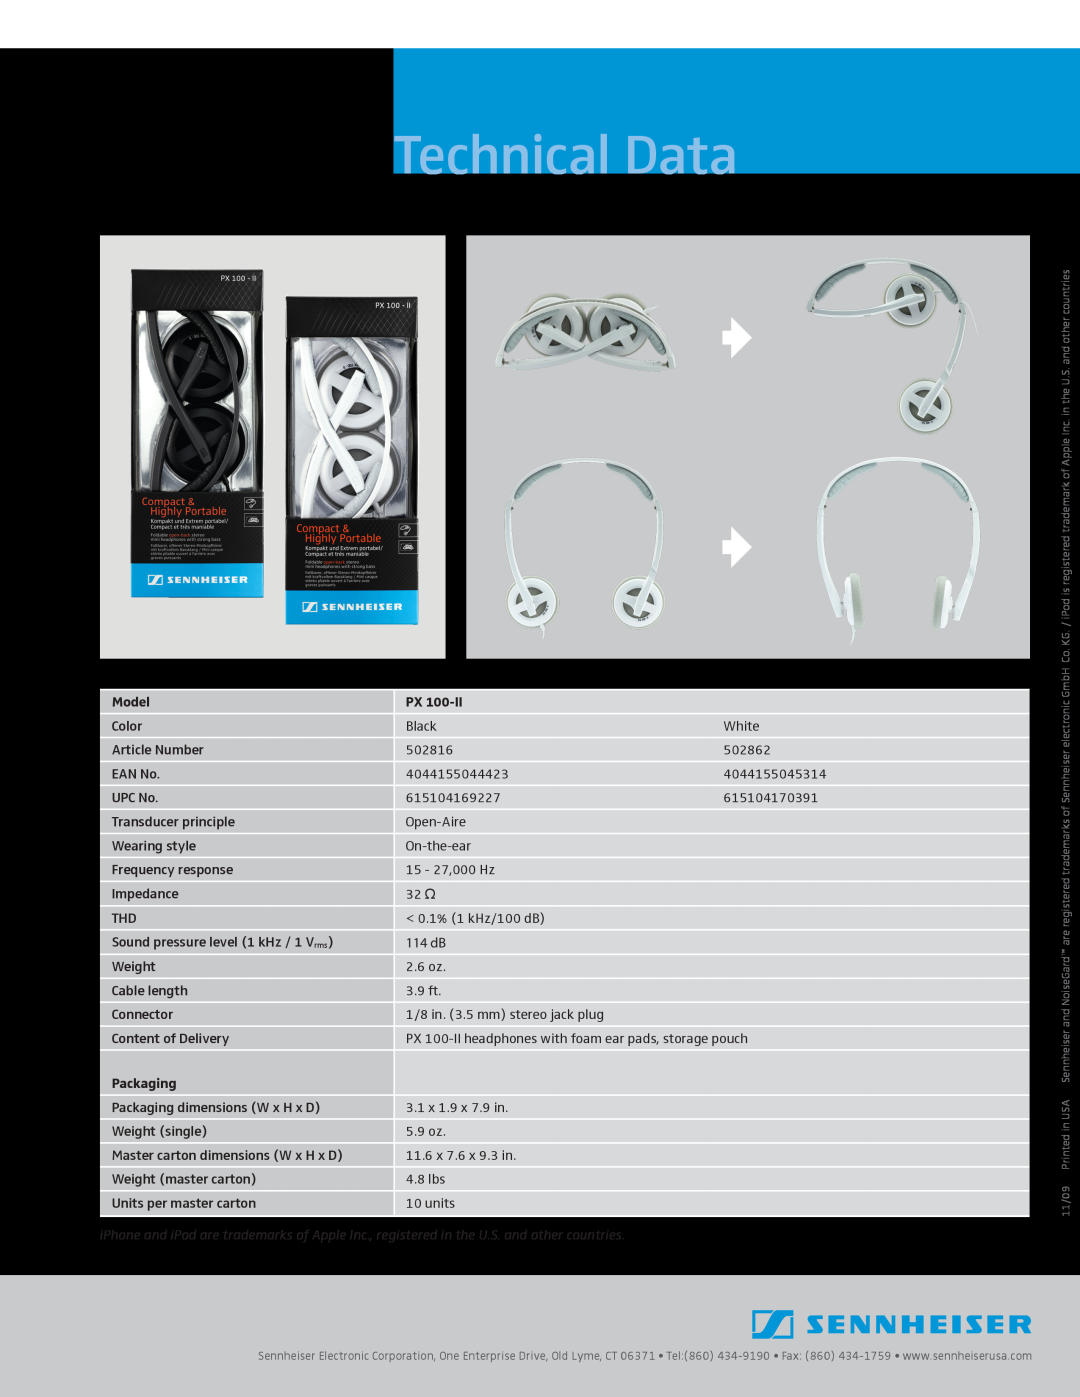 Sennheiser 502862, 502816 manual Technical Data, Model, Packaging 